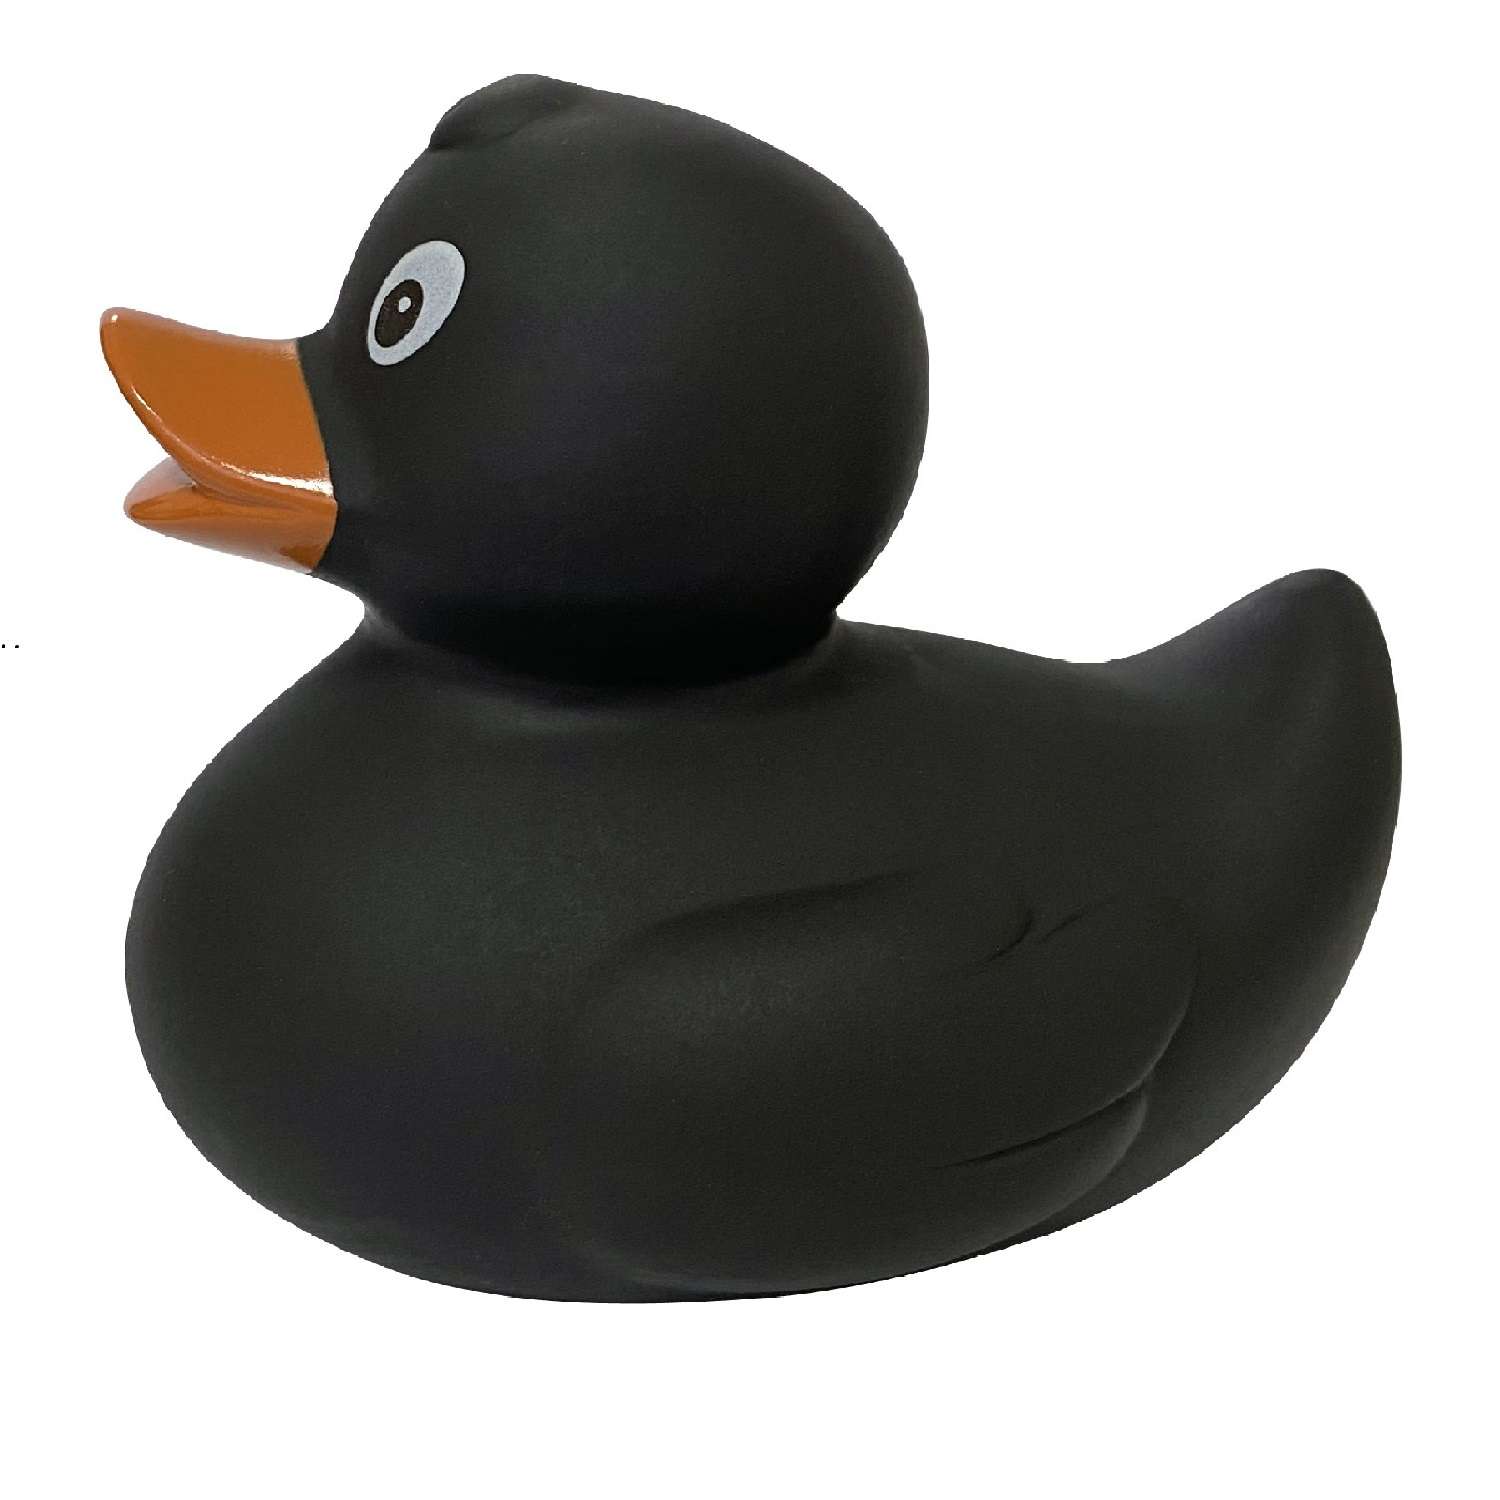 Игрушка Funny ducks для ванной Черная уточка 1304 - фото 2